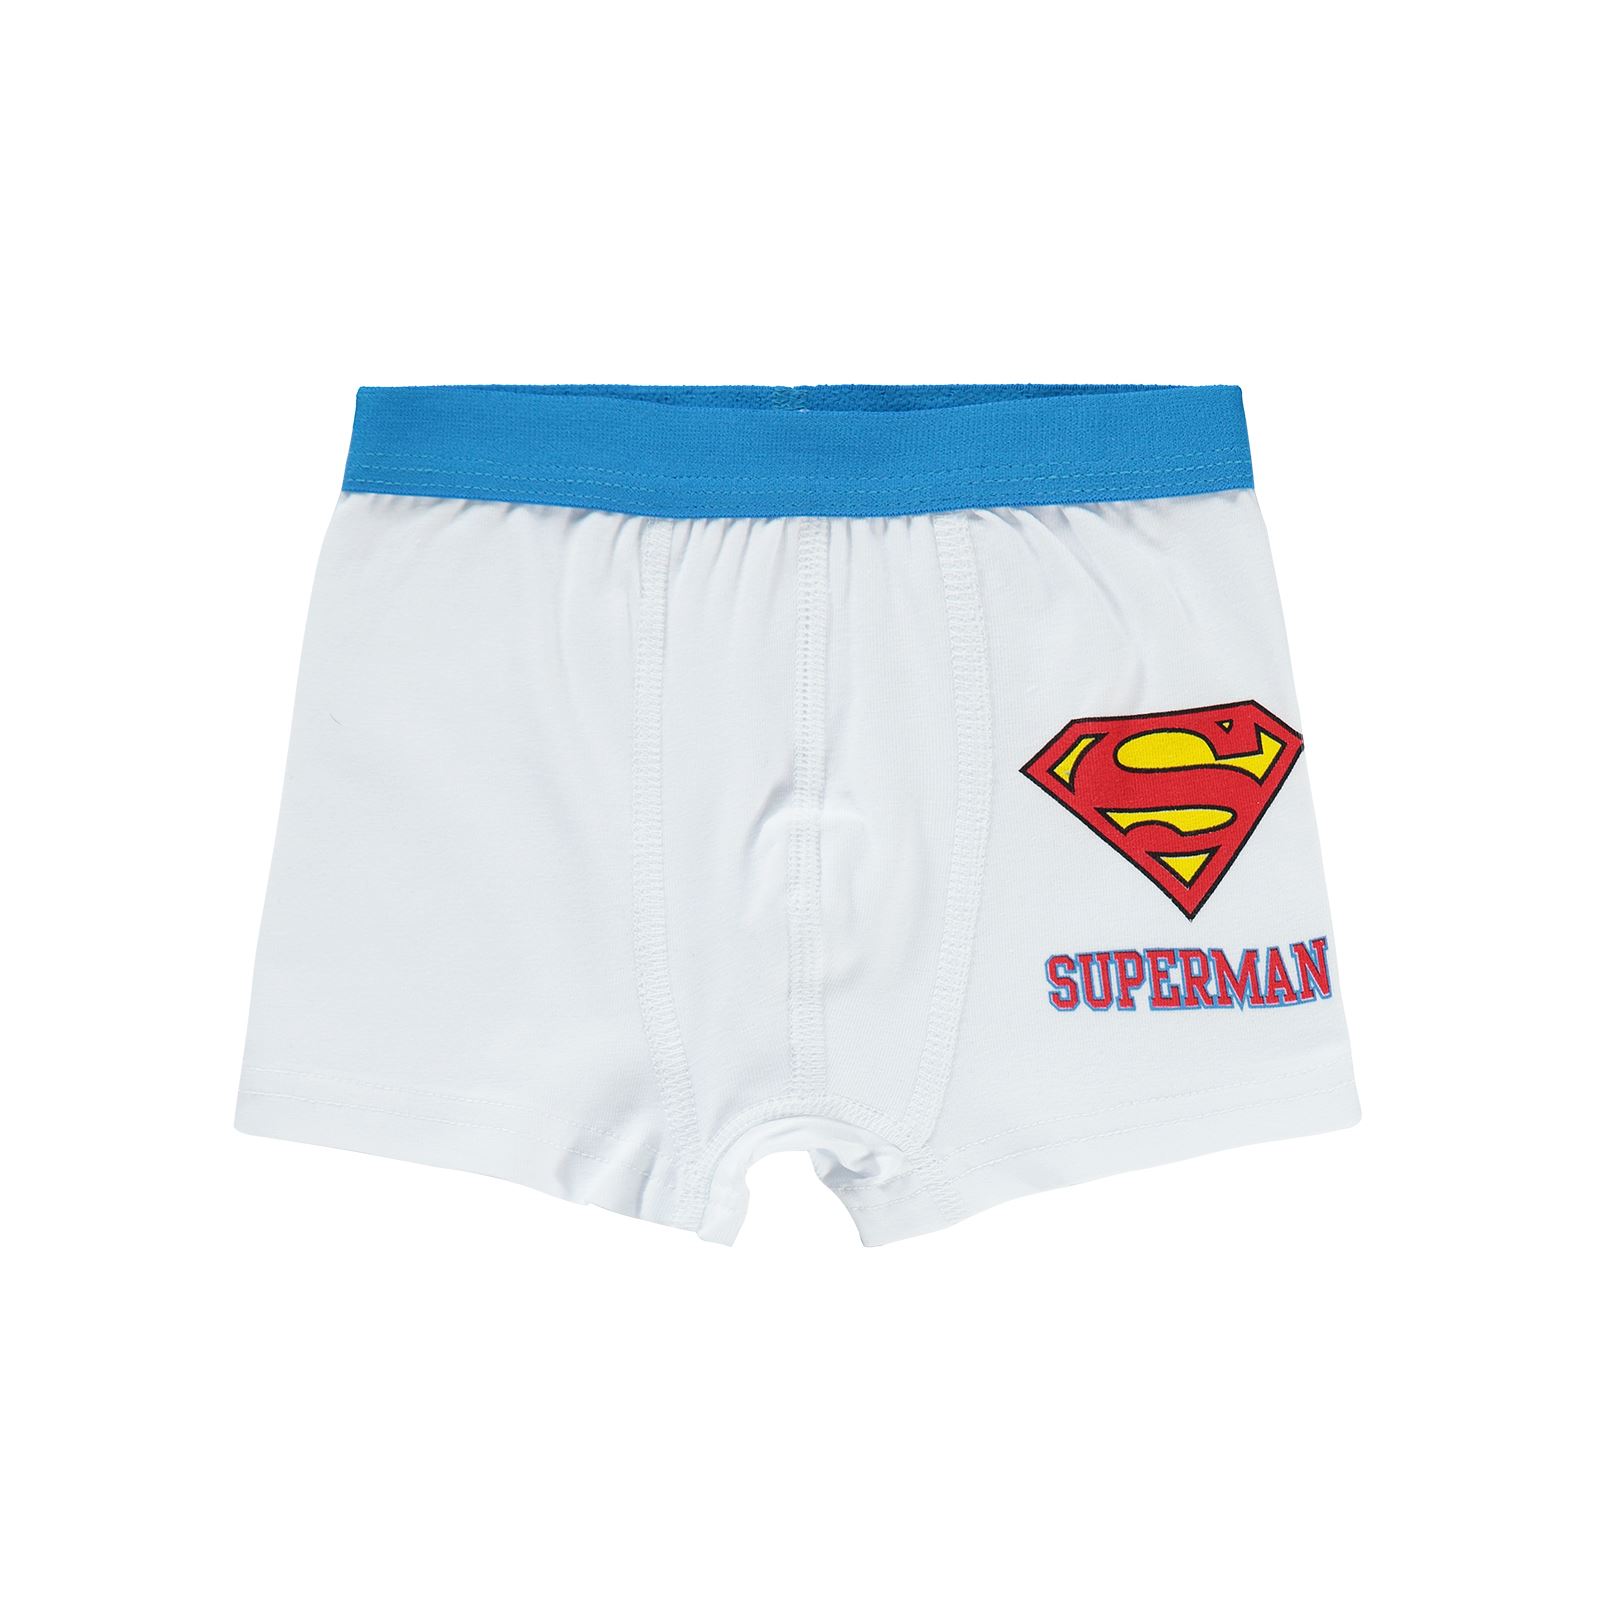 Süperman Erkek Çocuk Boxer 2-10 Yaş Mavi